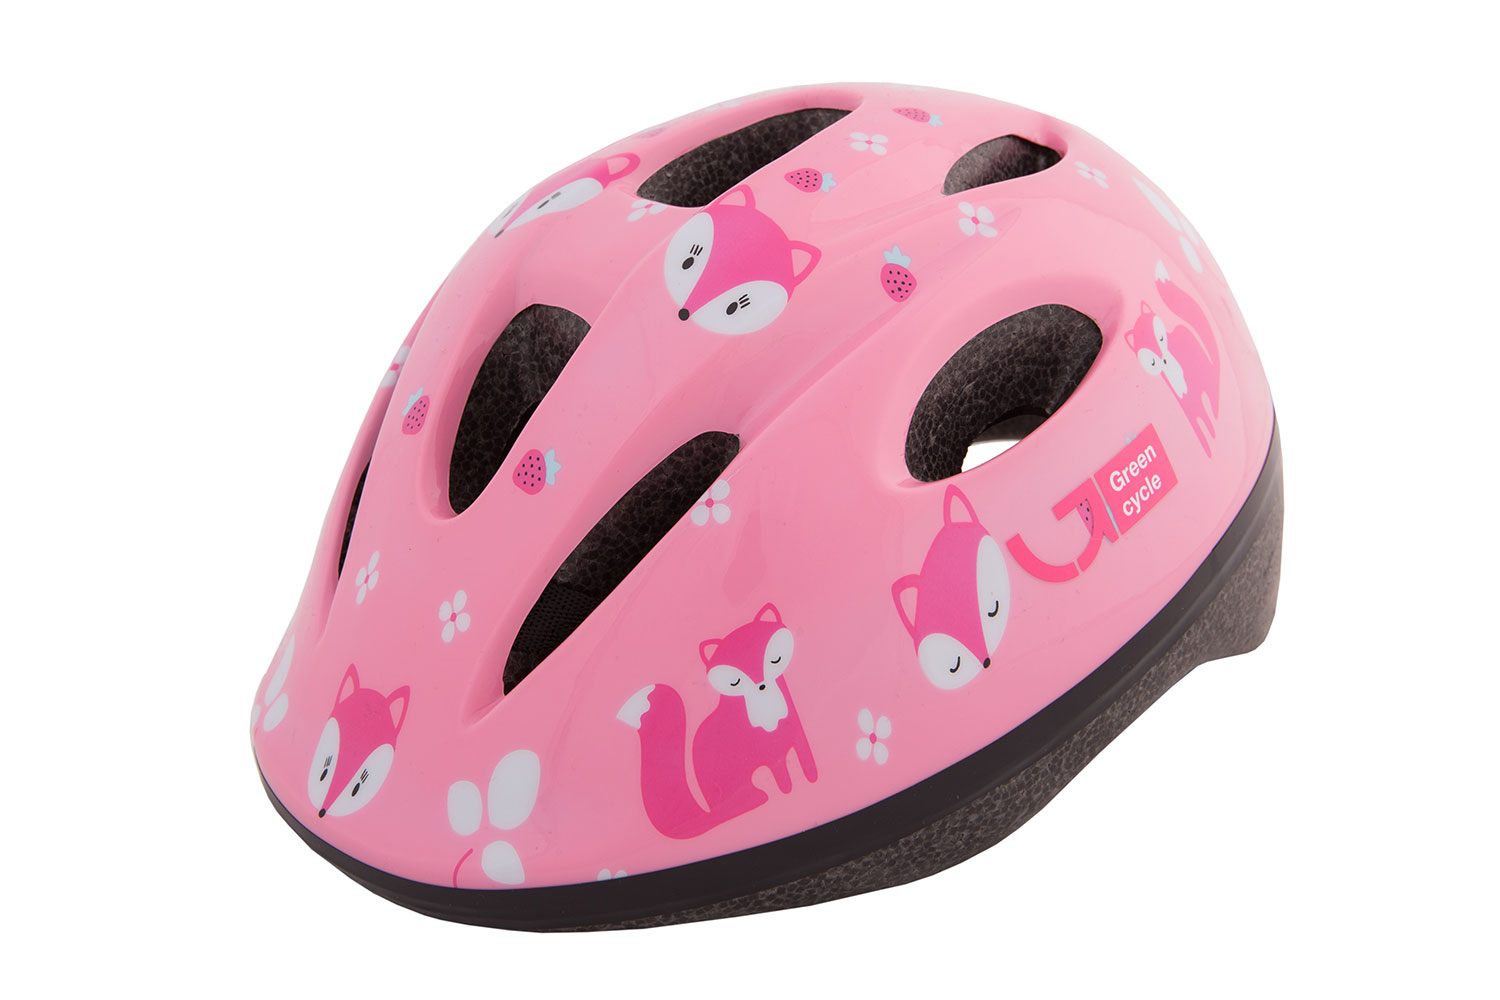 Шлем детский Green Cycle Foxy размер 50-54см розовый/малиновый/белый лак